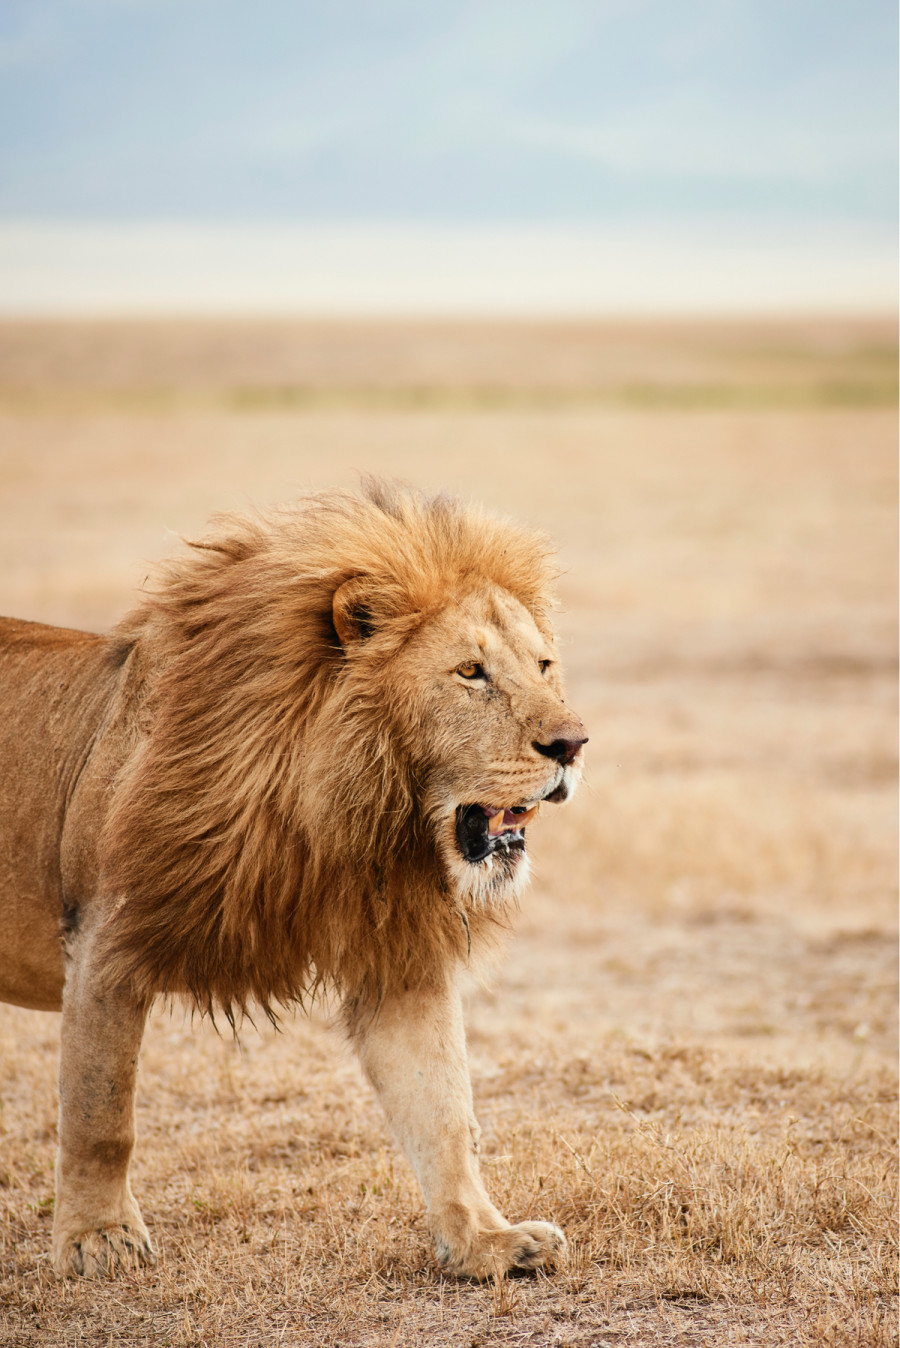 Lion Roaming on Game Safari in Tanzania - ROAR AFRICA